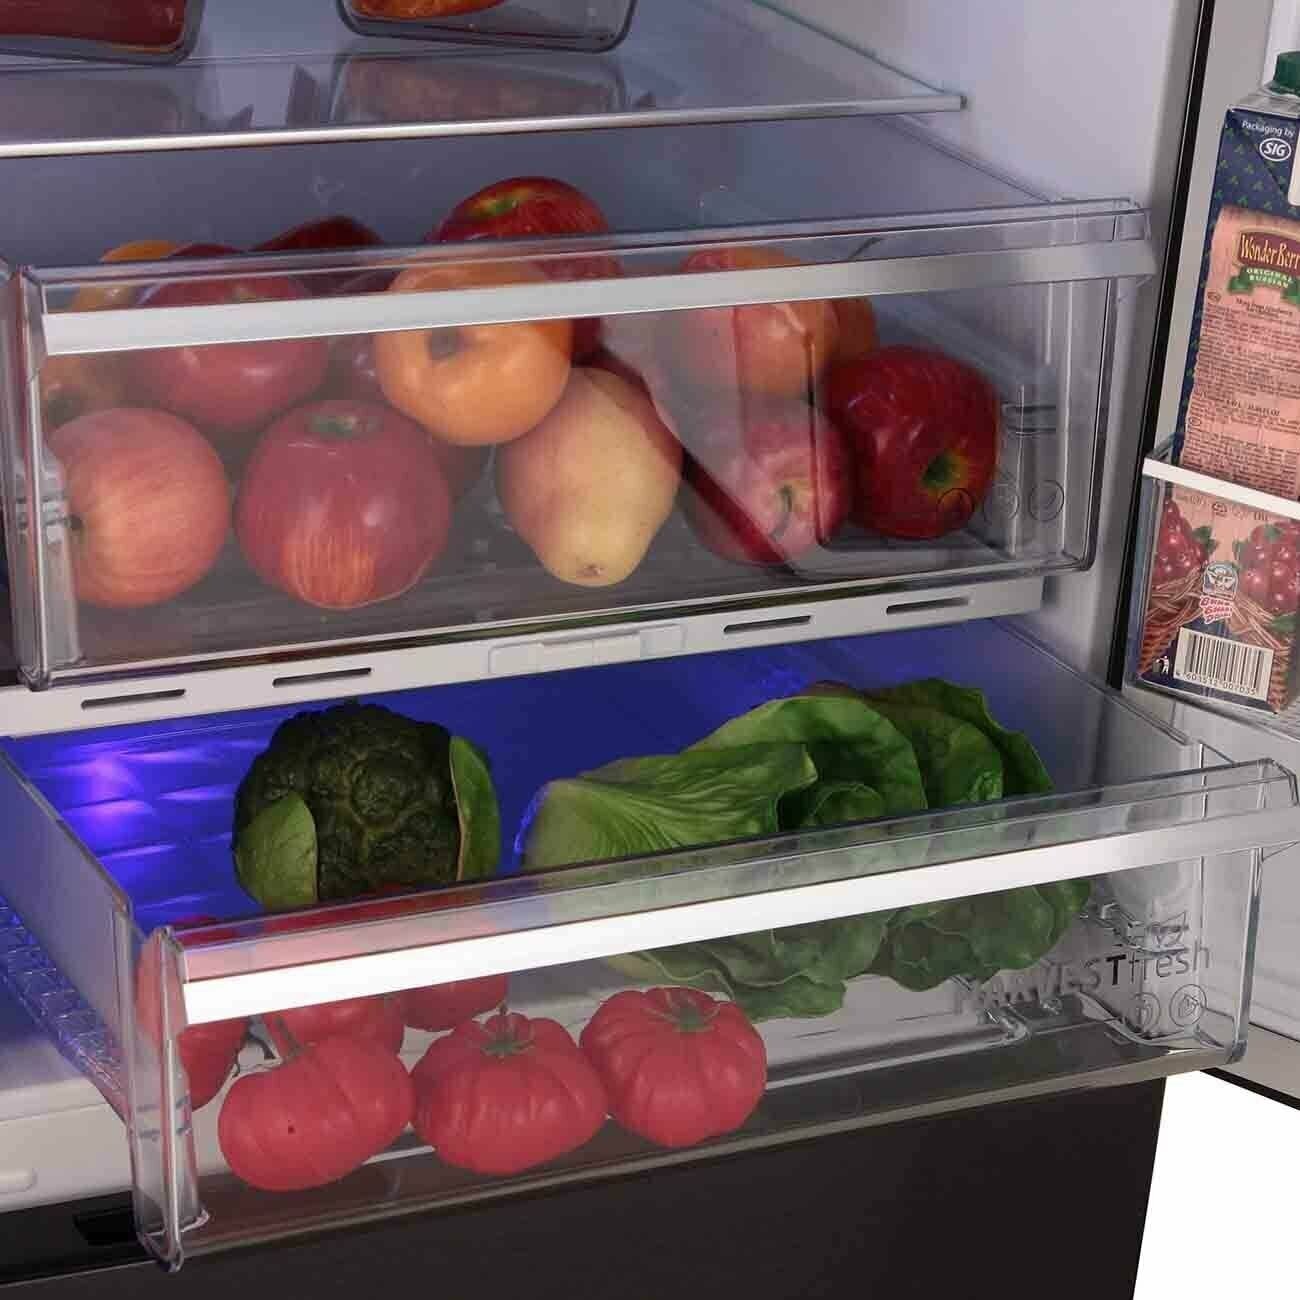 Холодильник Beko B5RCNK363Z